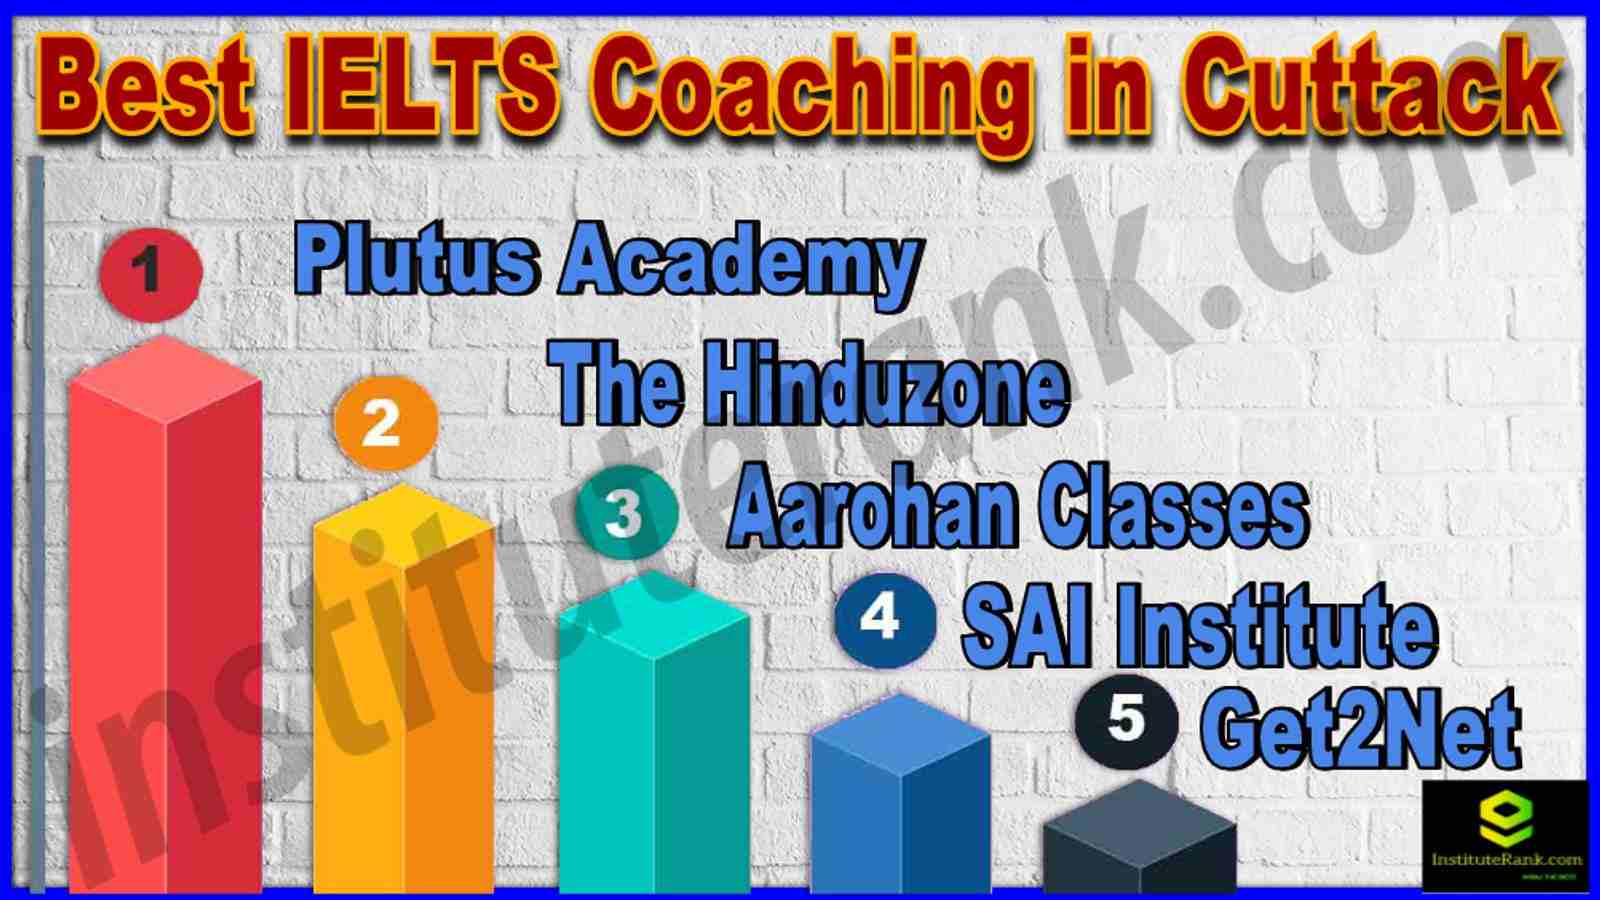 Best IELTS Coaching in Cuttack